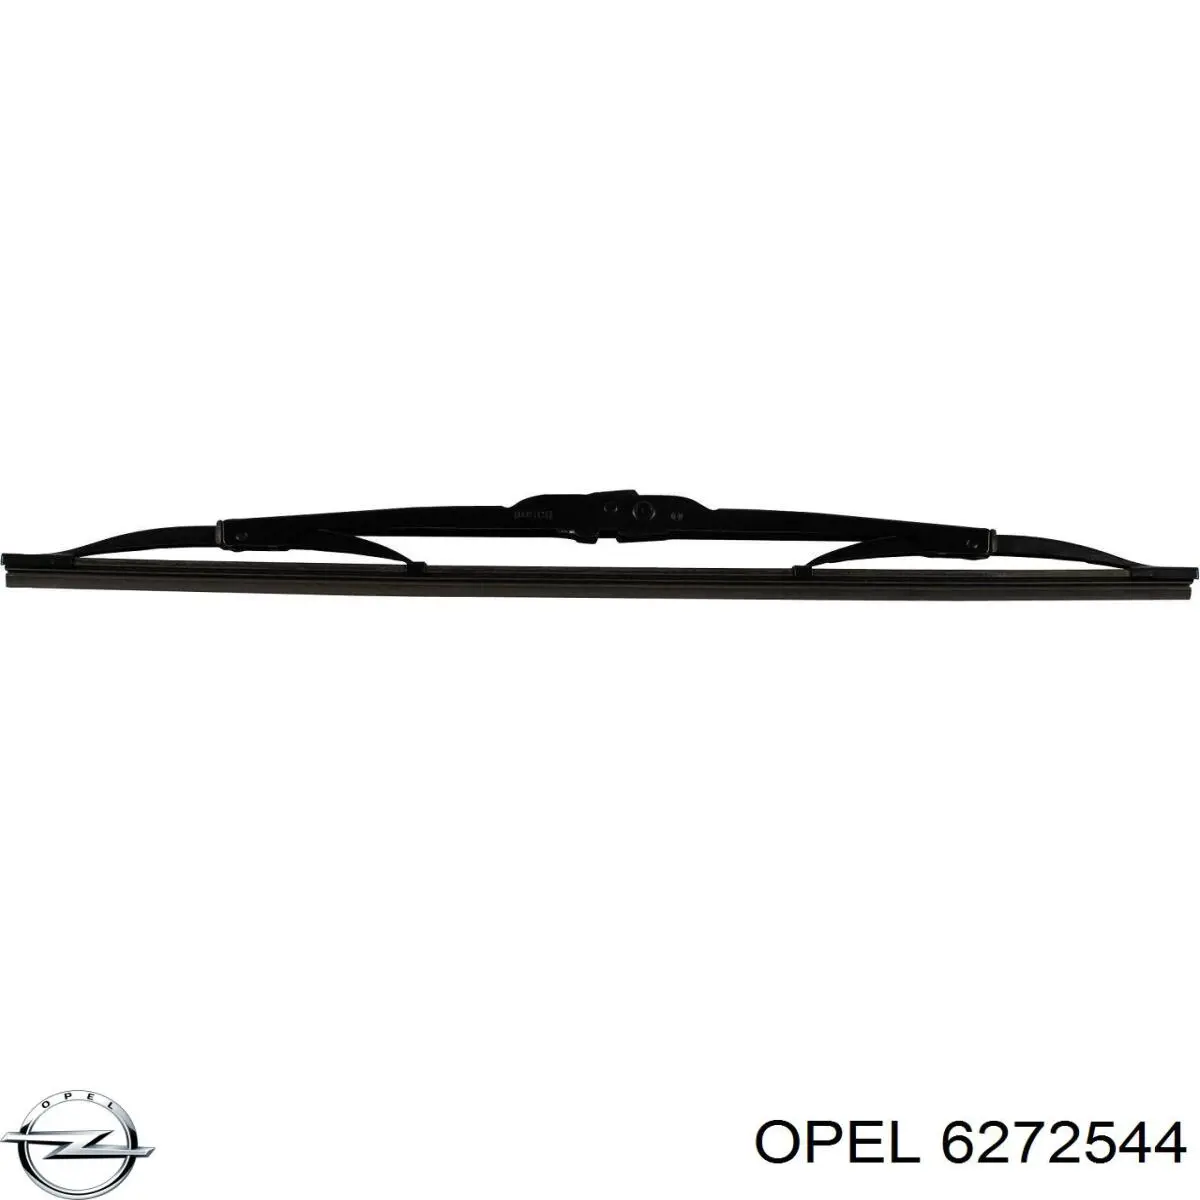 6272544 Opel щетка-дворник лобового стекла, комплект из 2 шт.